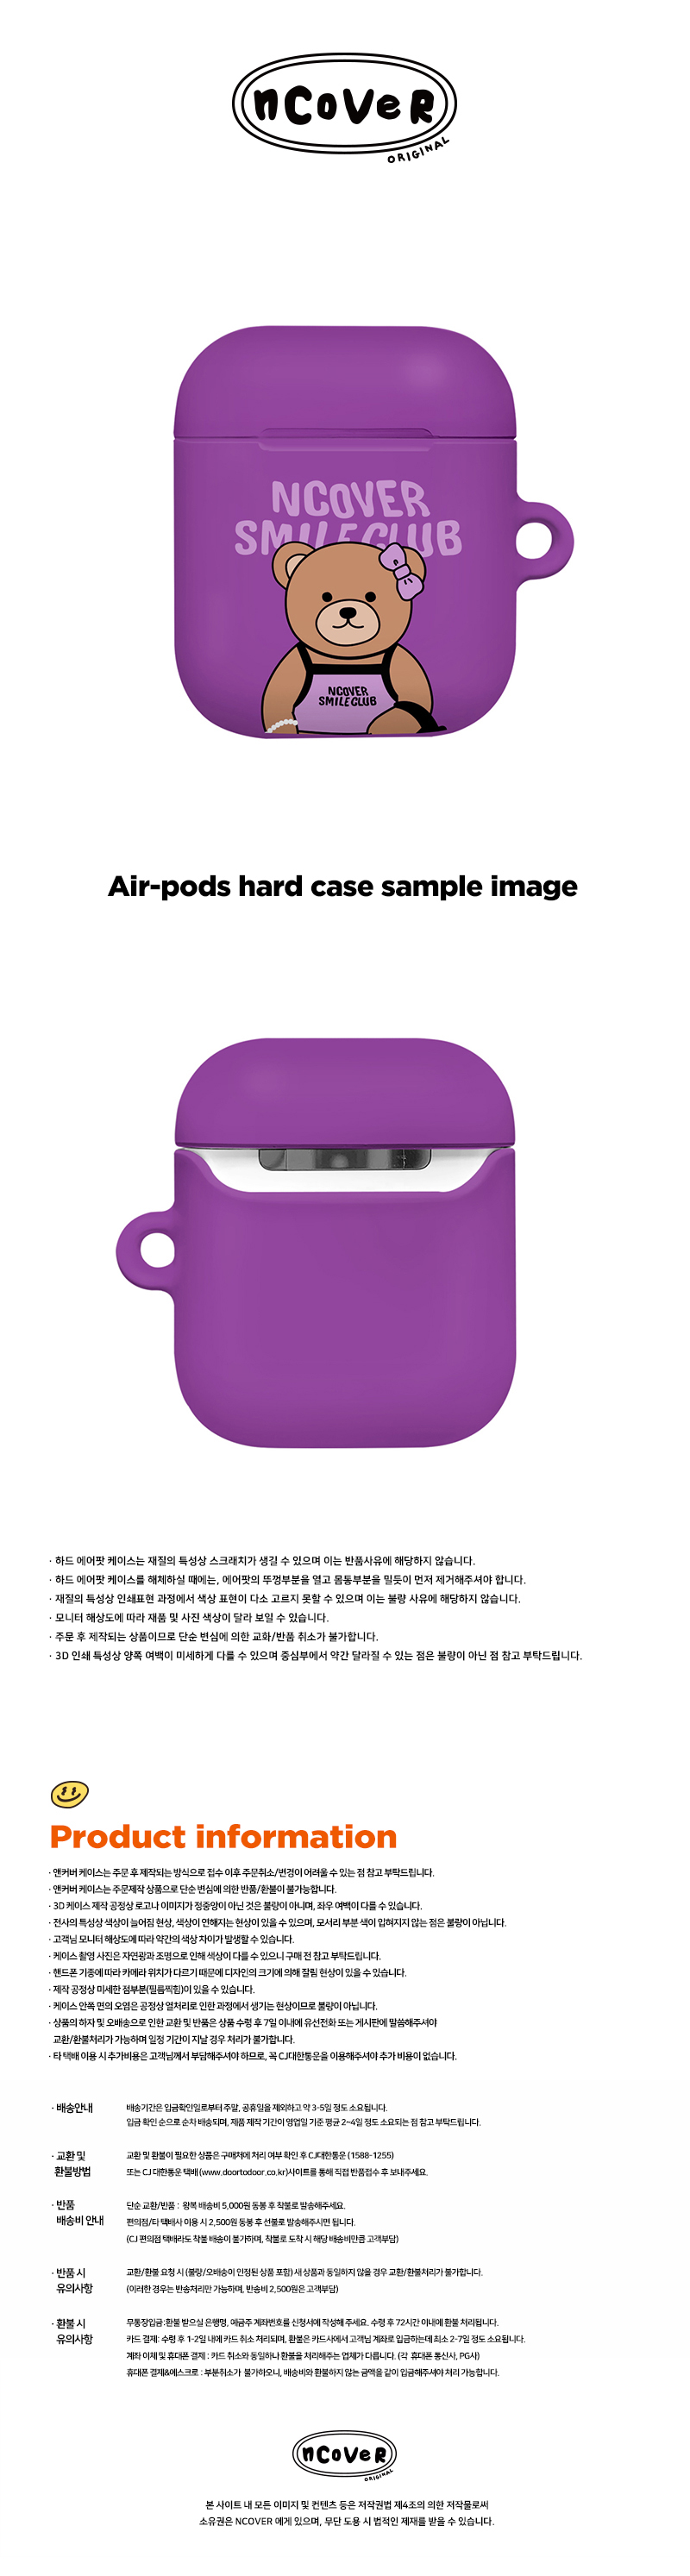 [호환용] Handbag bruin-purple(airpods hard)  18,000원 - 바이인터내셔널주식회사 디지털, 이어폰/헤드폰, 이어폰/헤드폰 액세서리, 에어팟/에어팟프로 케이스 바보사랑 [호환용] Handbag bruin-purple(airpods hard)  18,000원 - 바이인터내셔널주식회사 디지털, 이어폰/헤드폰, 이어폰/헤드폰 액세서리, 에어팟/에어팟프로 케이스 바보사랑